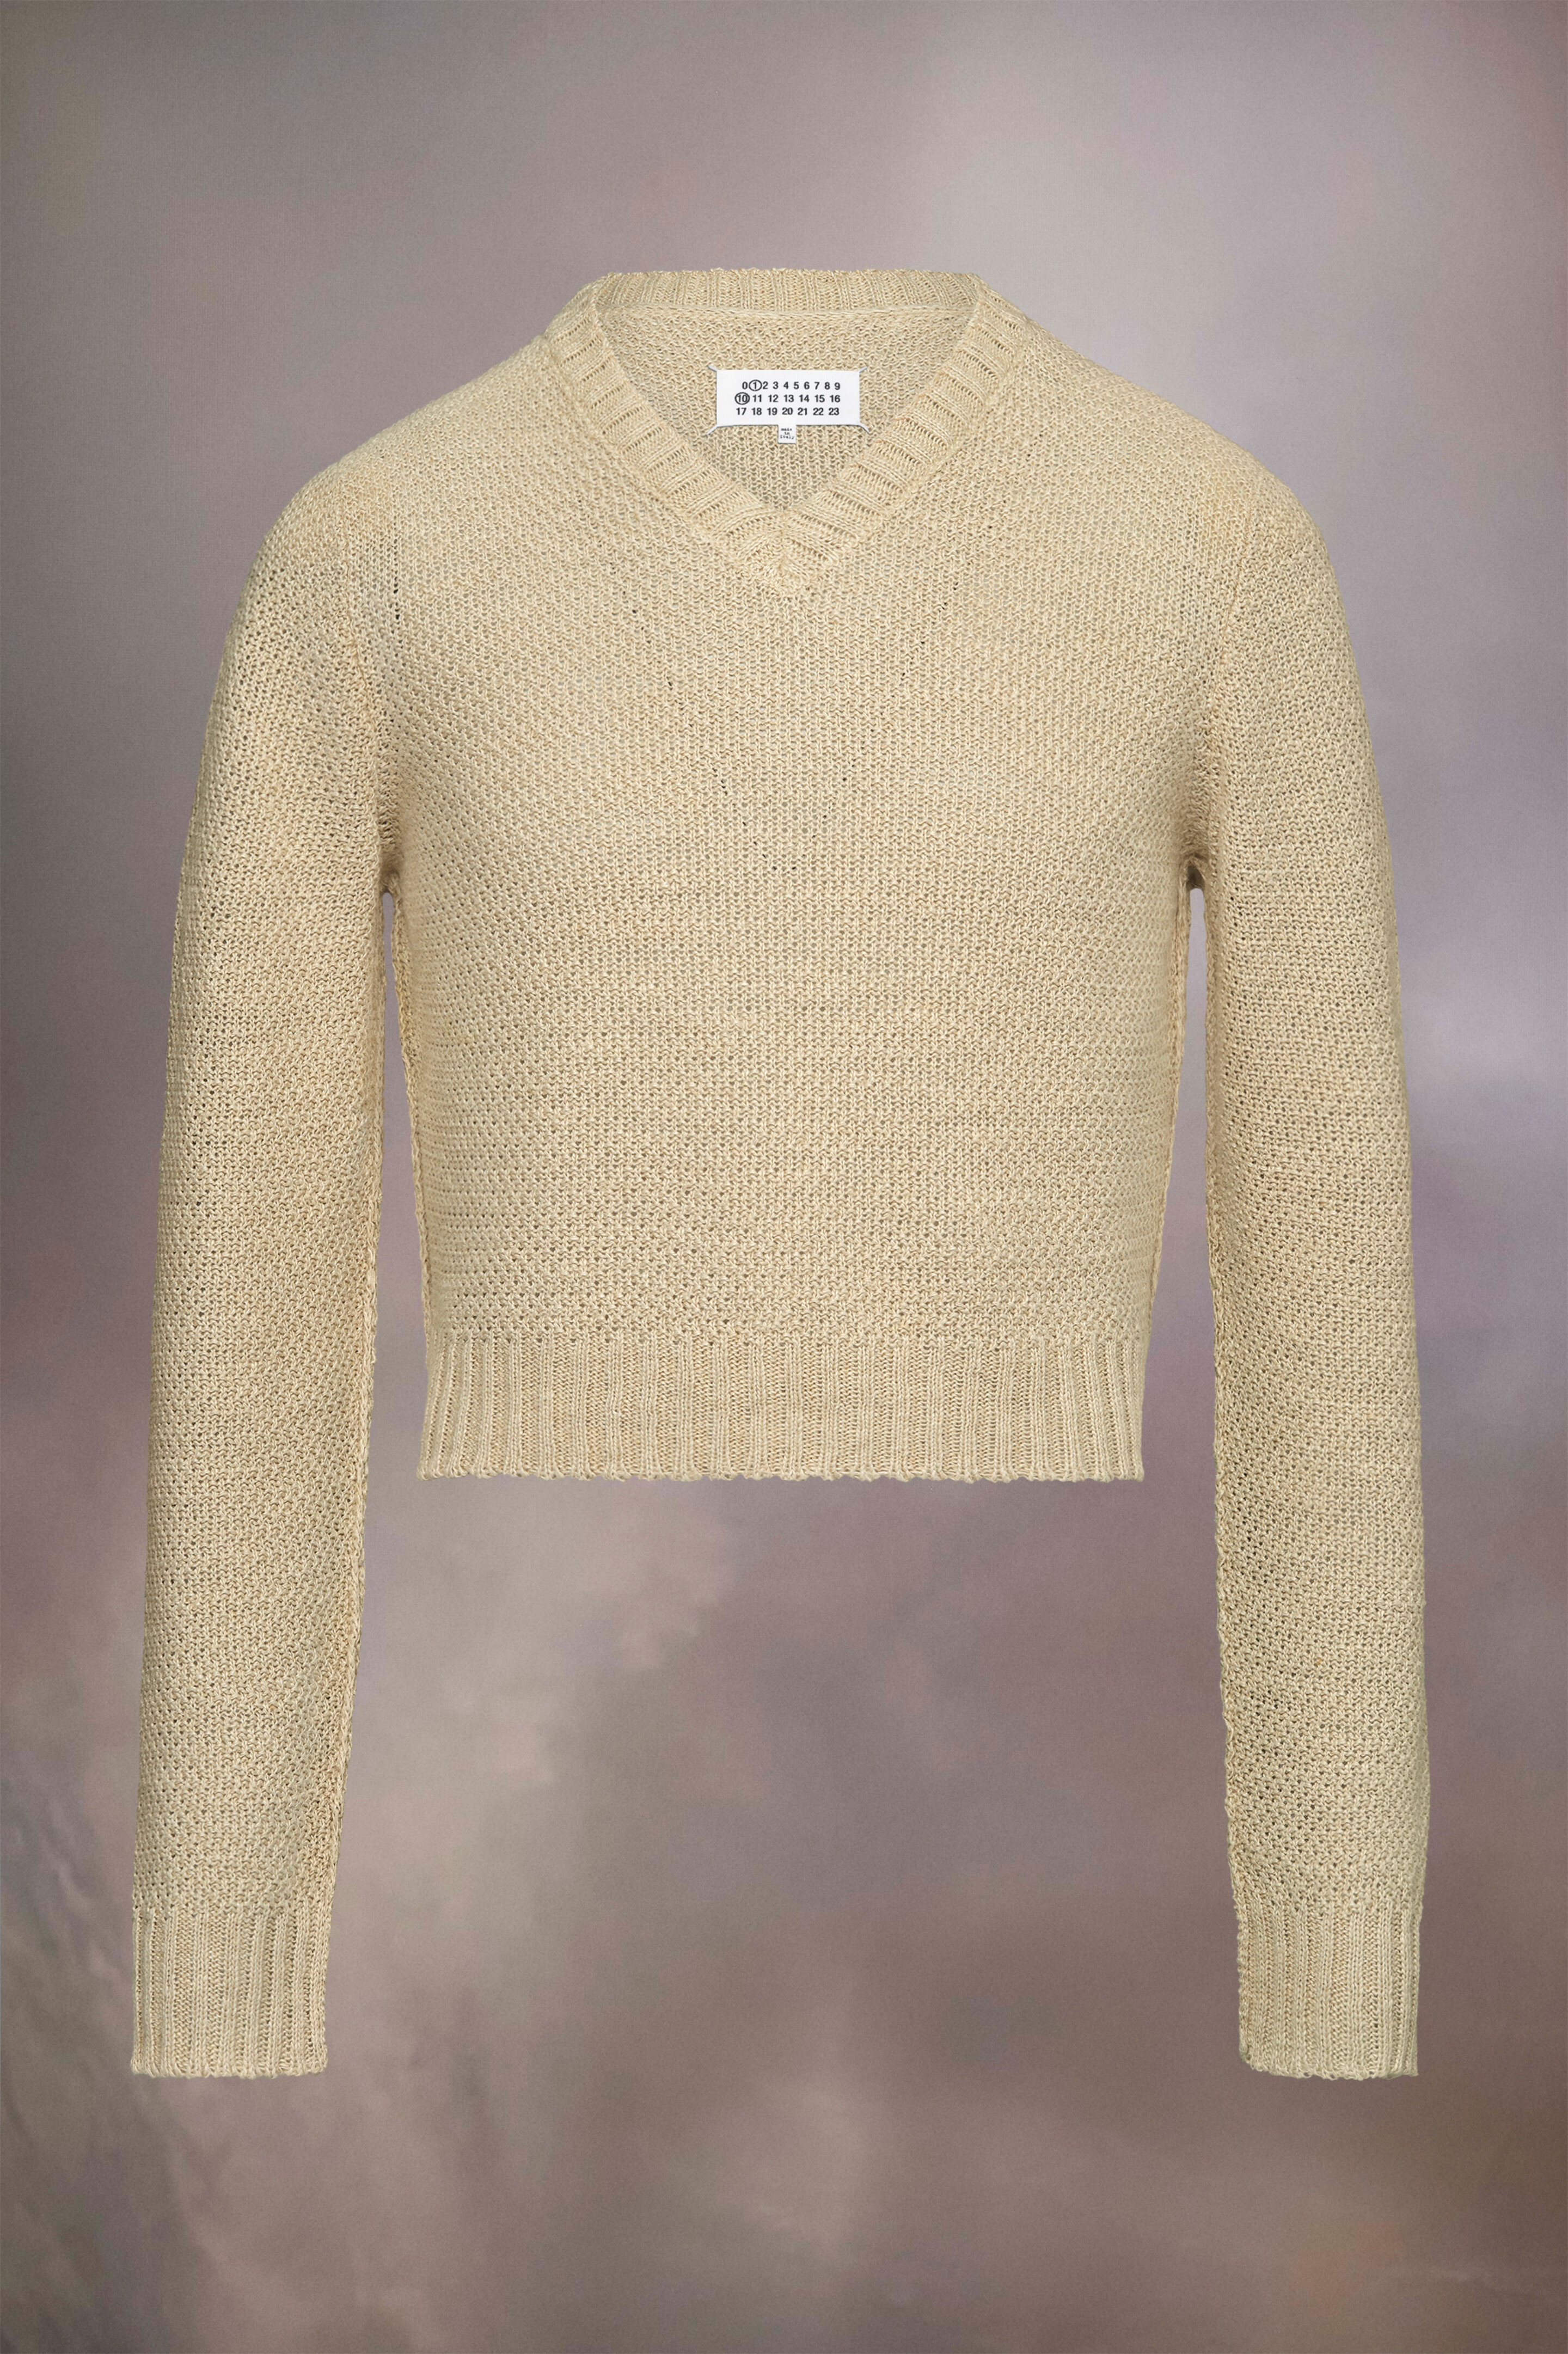 Hemp basket weave knit sweatshirt - 1